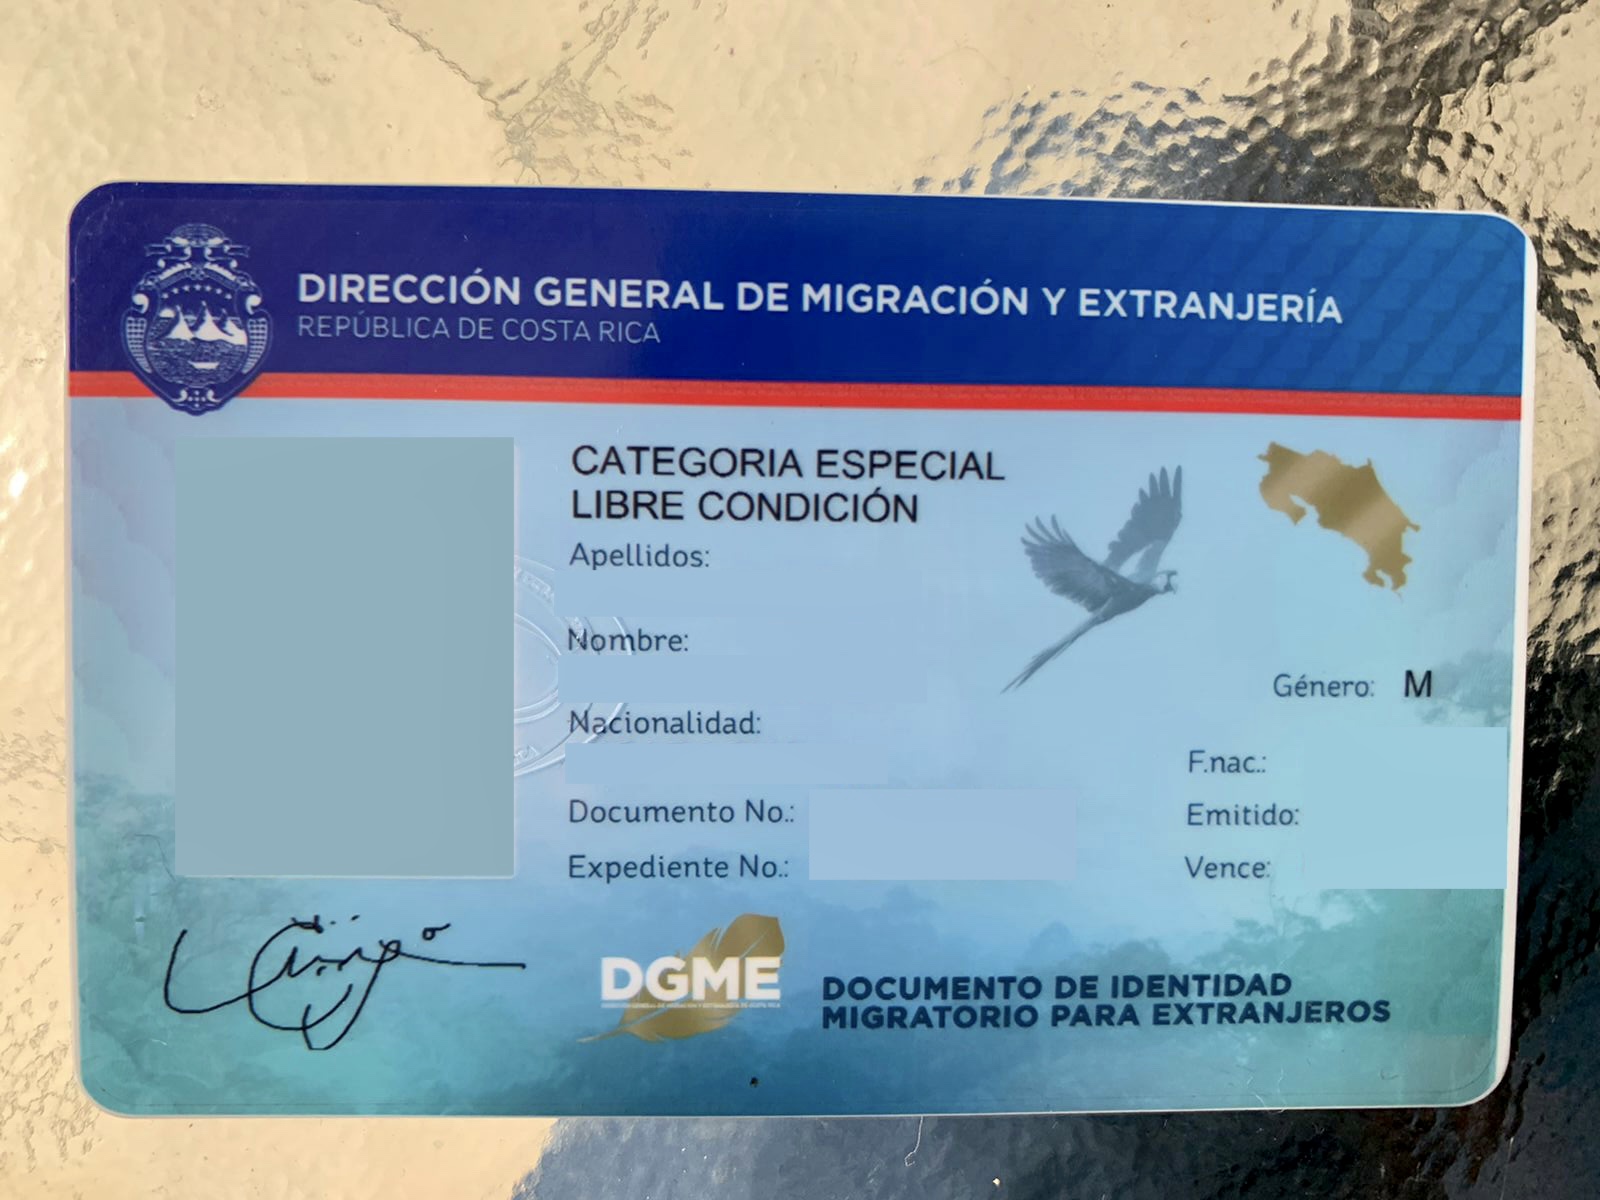 Documento de Identidad Migratorio para Extranjeros en Costa Rica (Dimex)